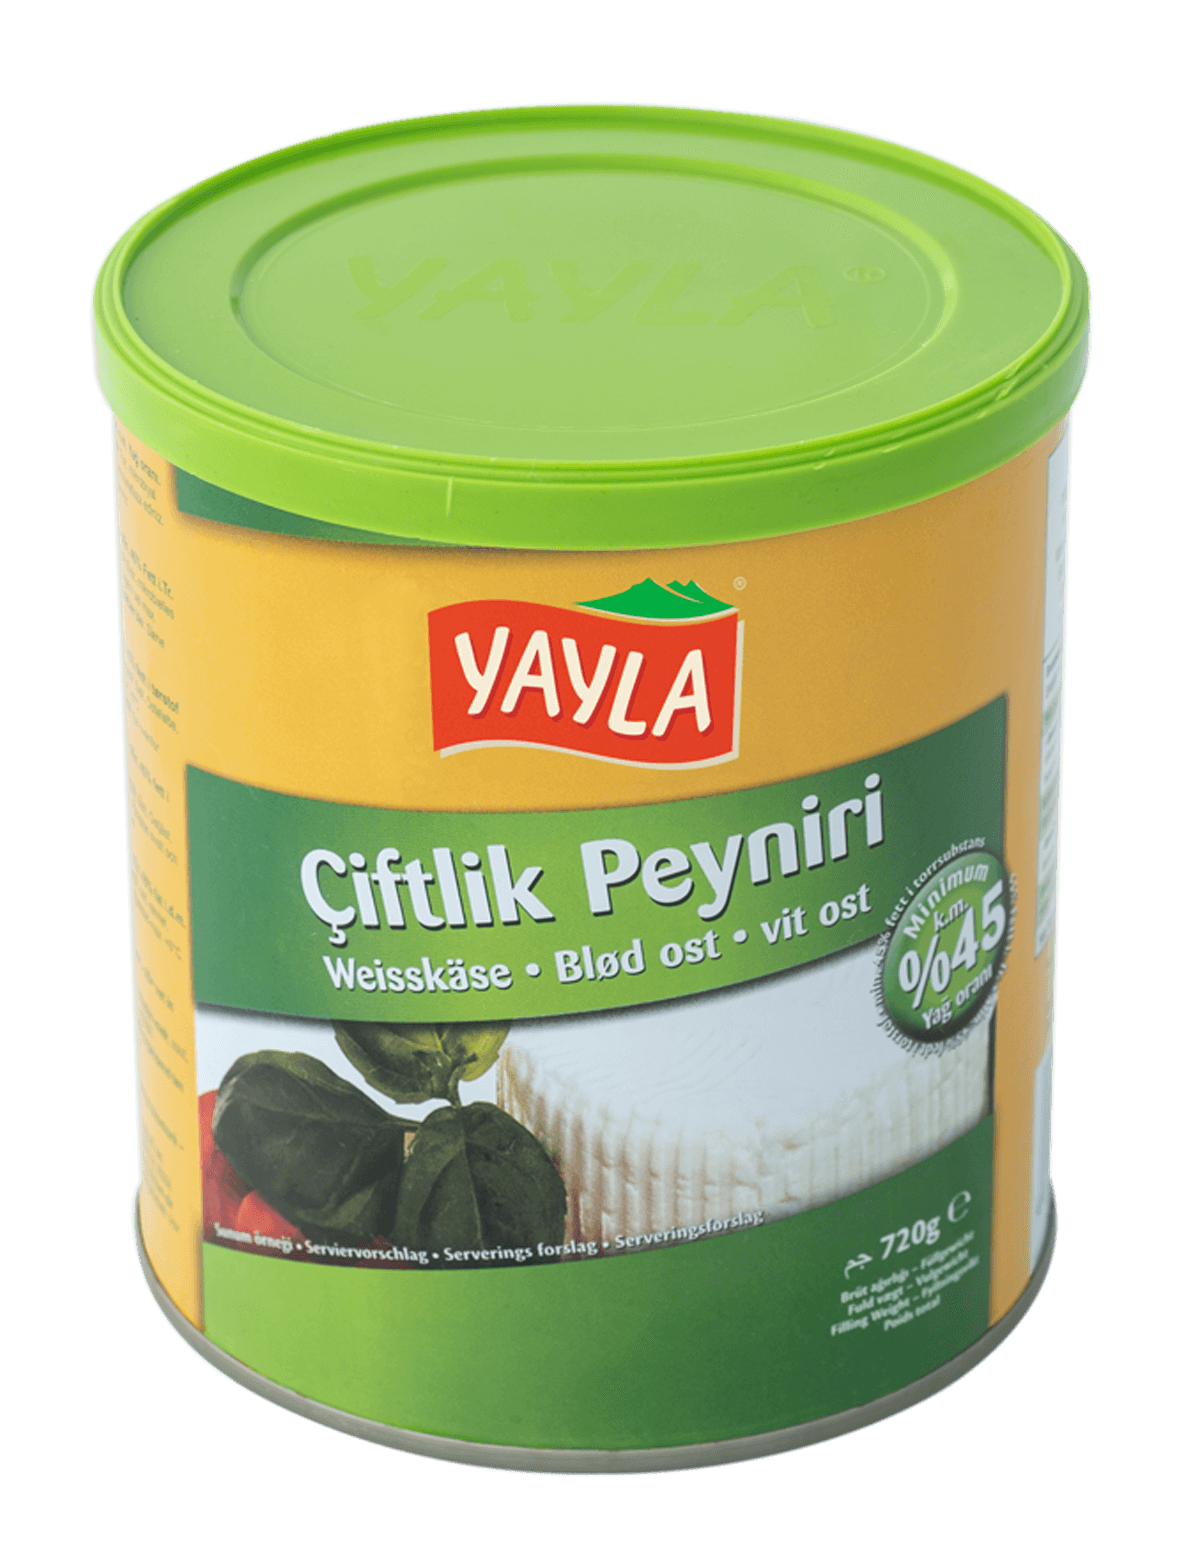 Yayla Ciftlik Peynir / Weißkäse 45% 400g